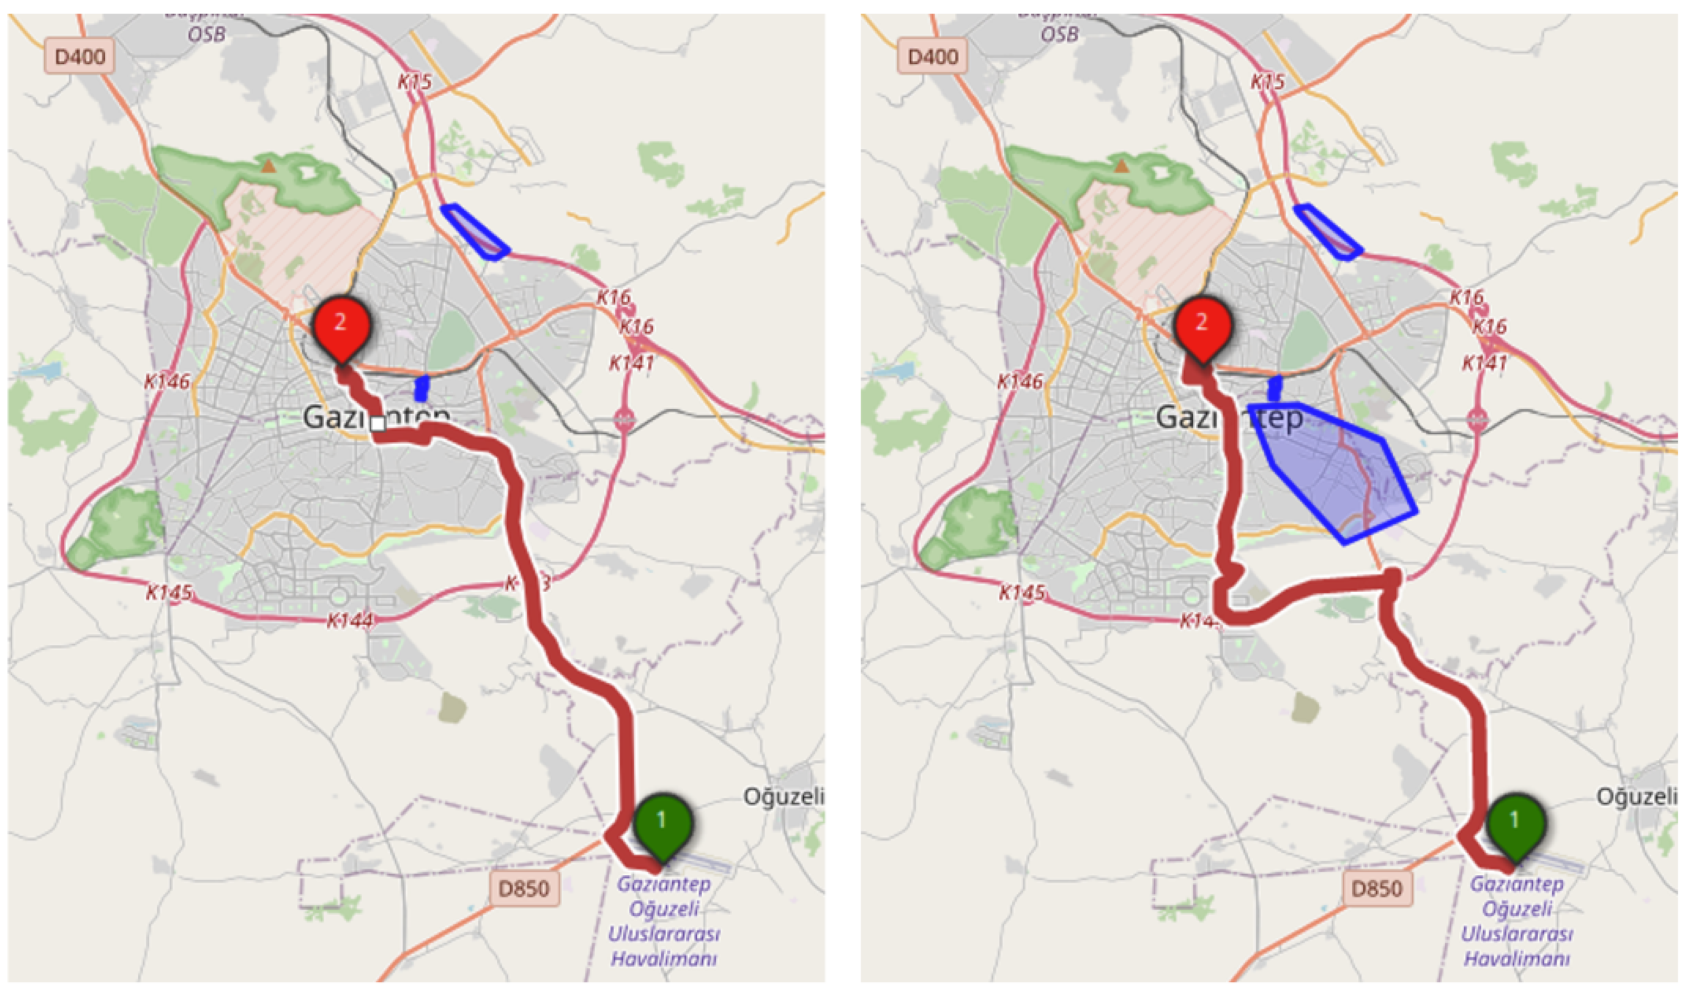 Das Disaster Portal berücksichtigt für die Berechnung der kürzesten Route automatisch nicht-befahrbare Gebiete (blau) und findet de schnellste alternative Route. Bild: HeiGIT